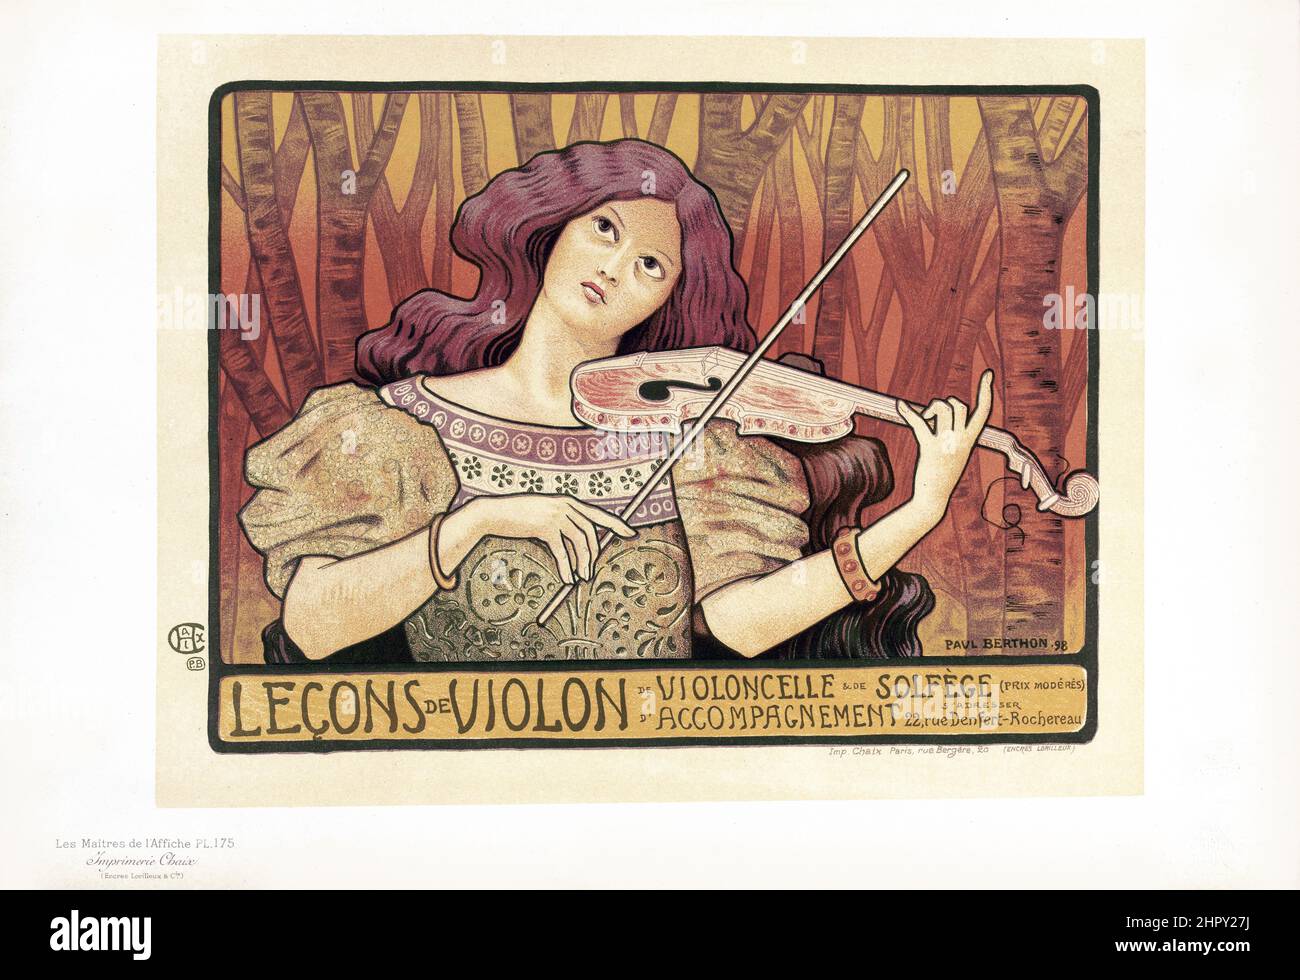 Maitres de l'affiche Vol 4 - Plate 175 - Paul Berthon - Lecons de Violon, Violin lessons. Art Nouveau poster. Stock Photo